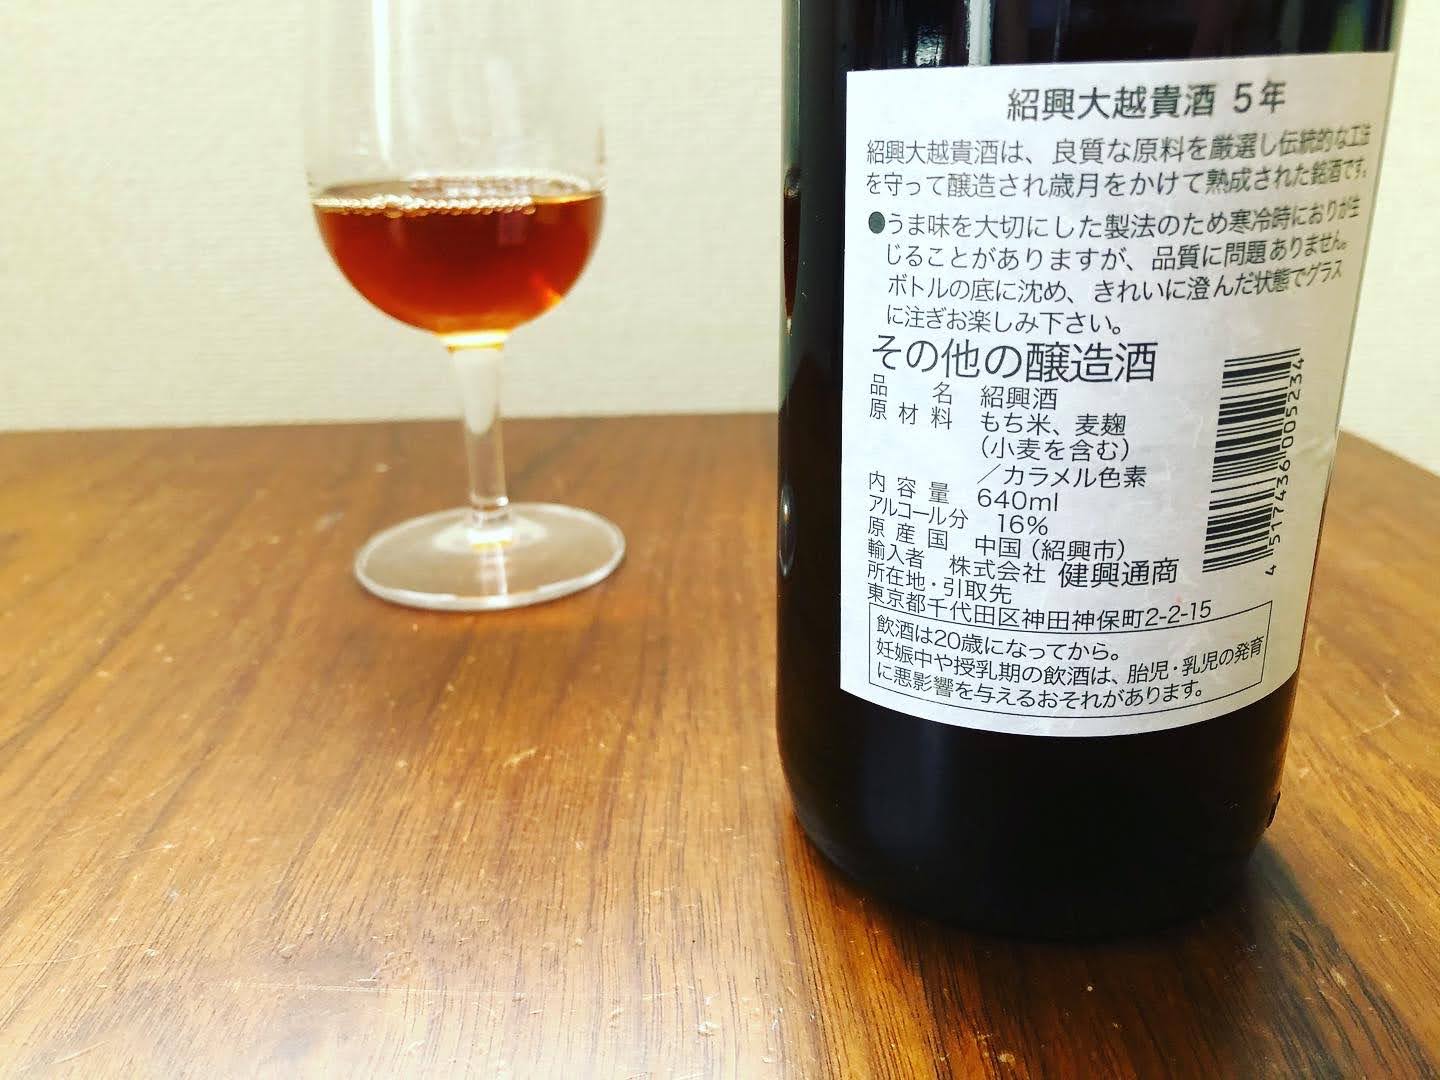 日本で買える紹興酒「紹興大越貴酒5年」の写真4枚目です。